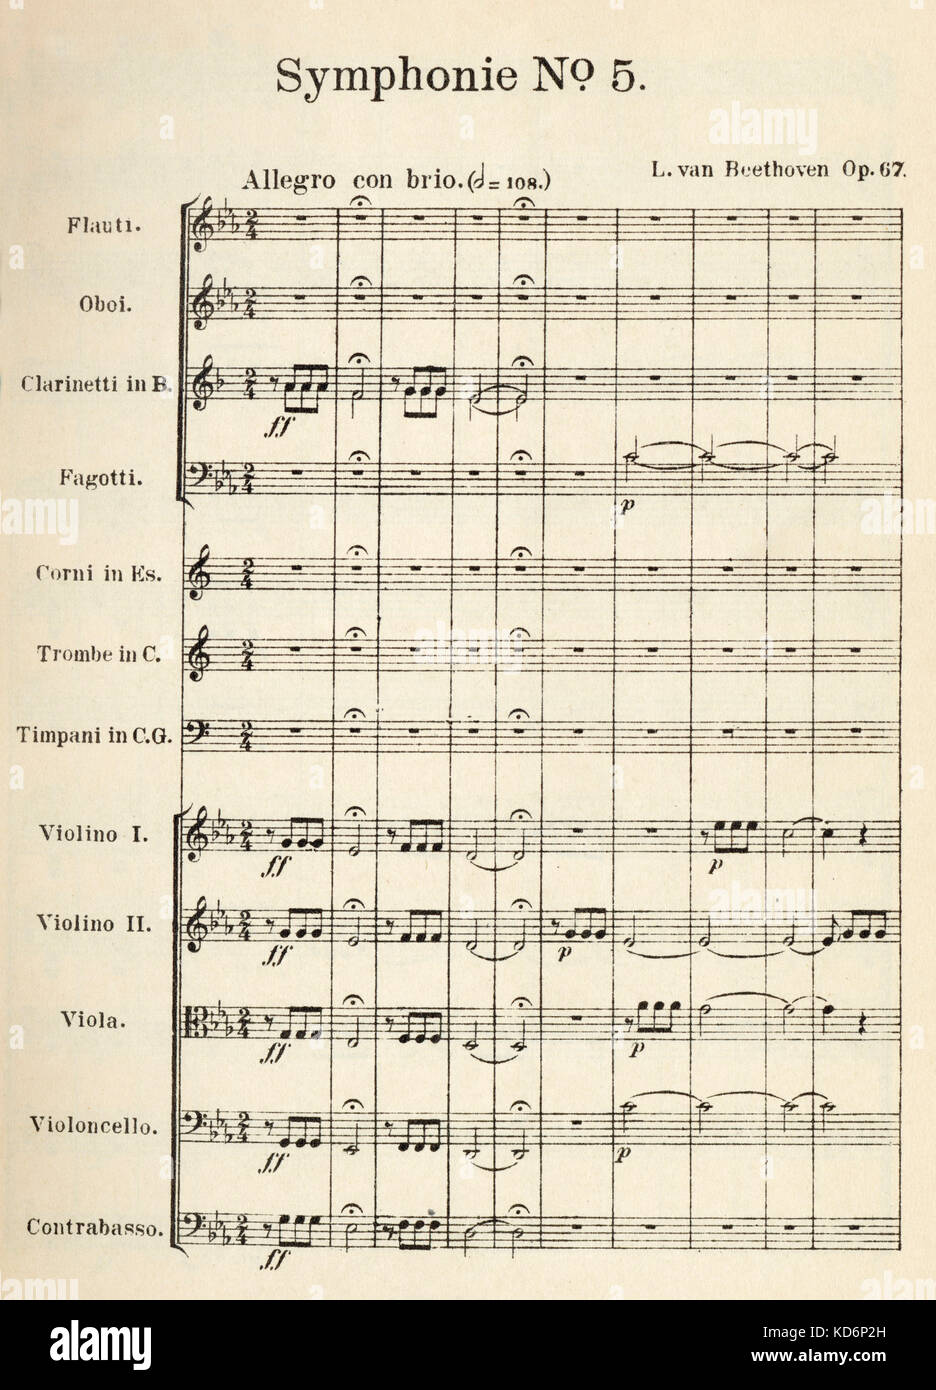 5e Symphonie de Beethoven - ouverture des bars de partition imprimée pour  grand orchestre d'instruments. Première page imprimée de l'Op.67. Écrit  dans l'écriture de Beethoven compositeur allemand 1770-1827. Cinquième.  Publié par Eulenburg